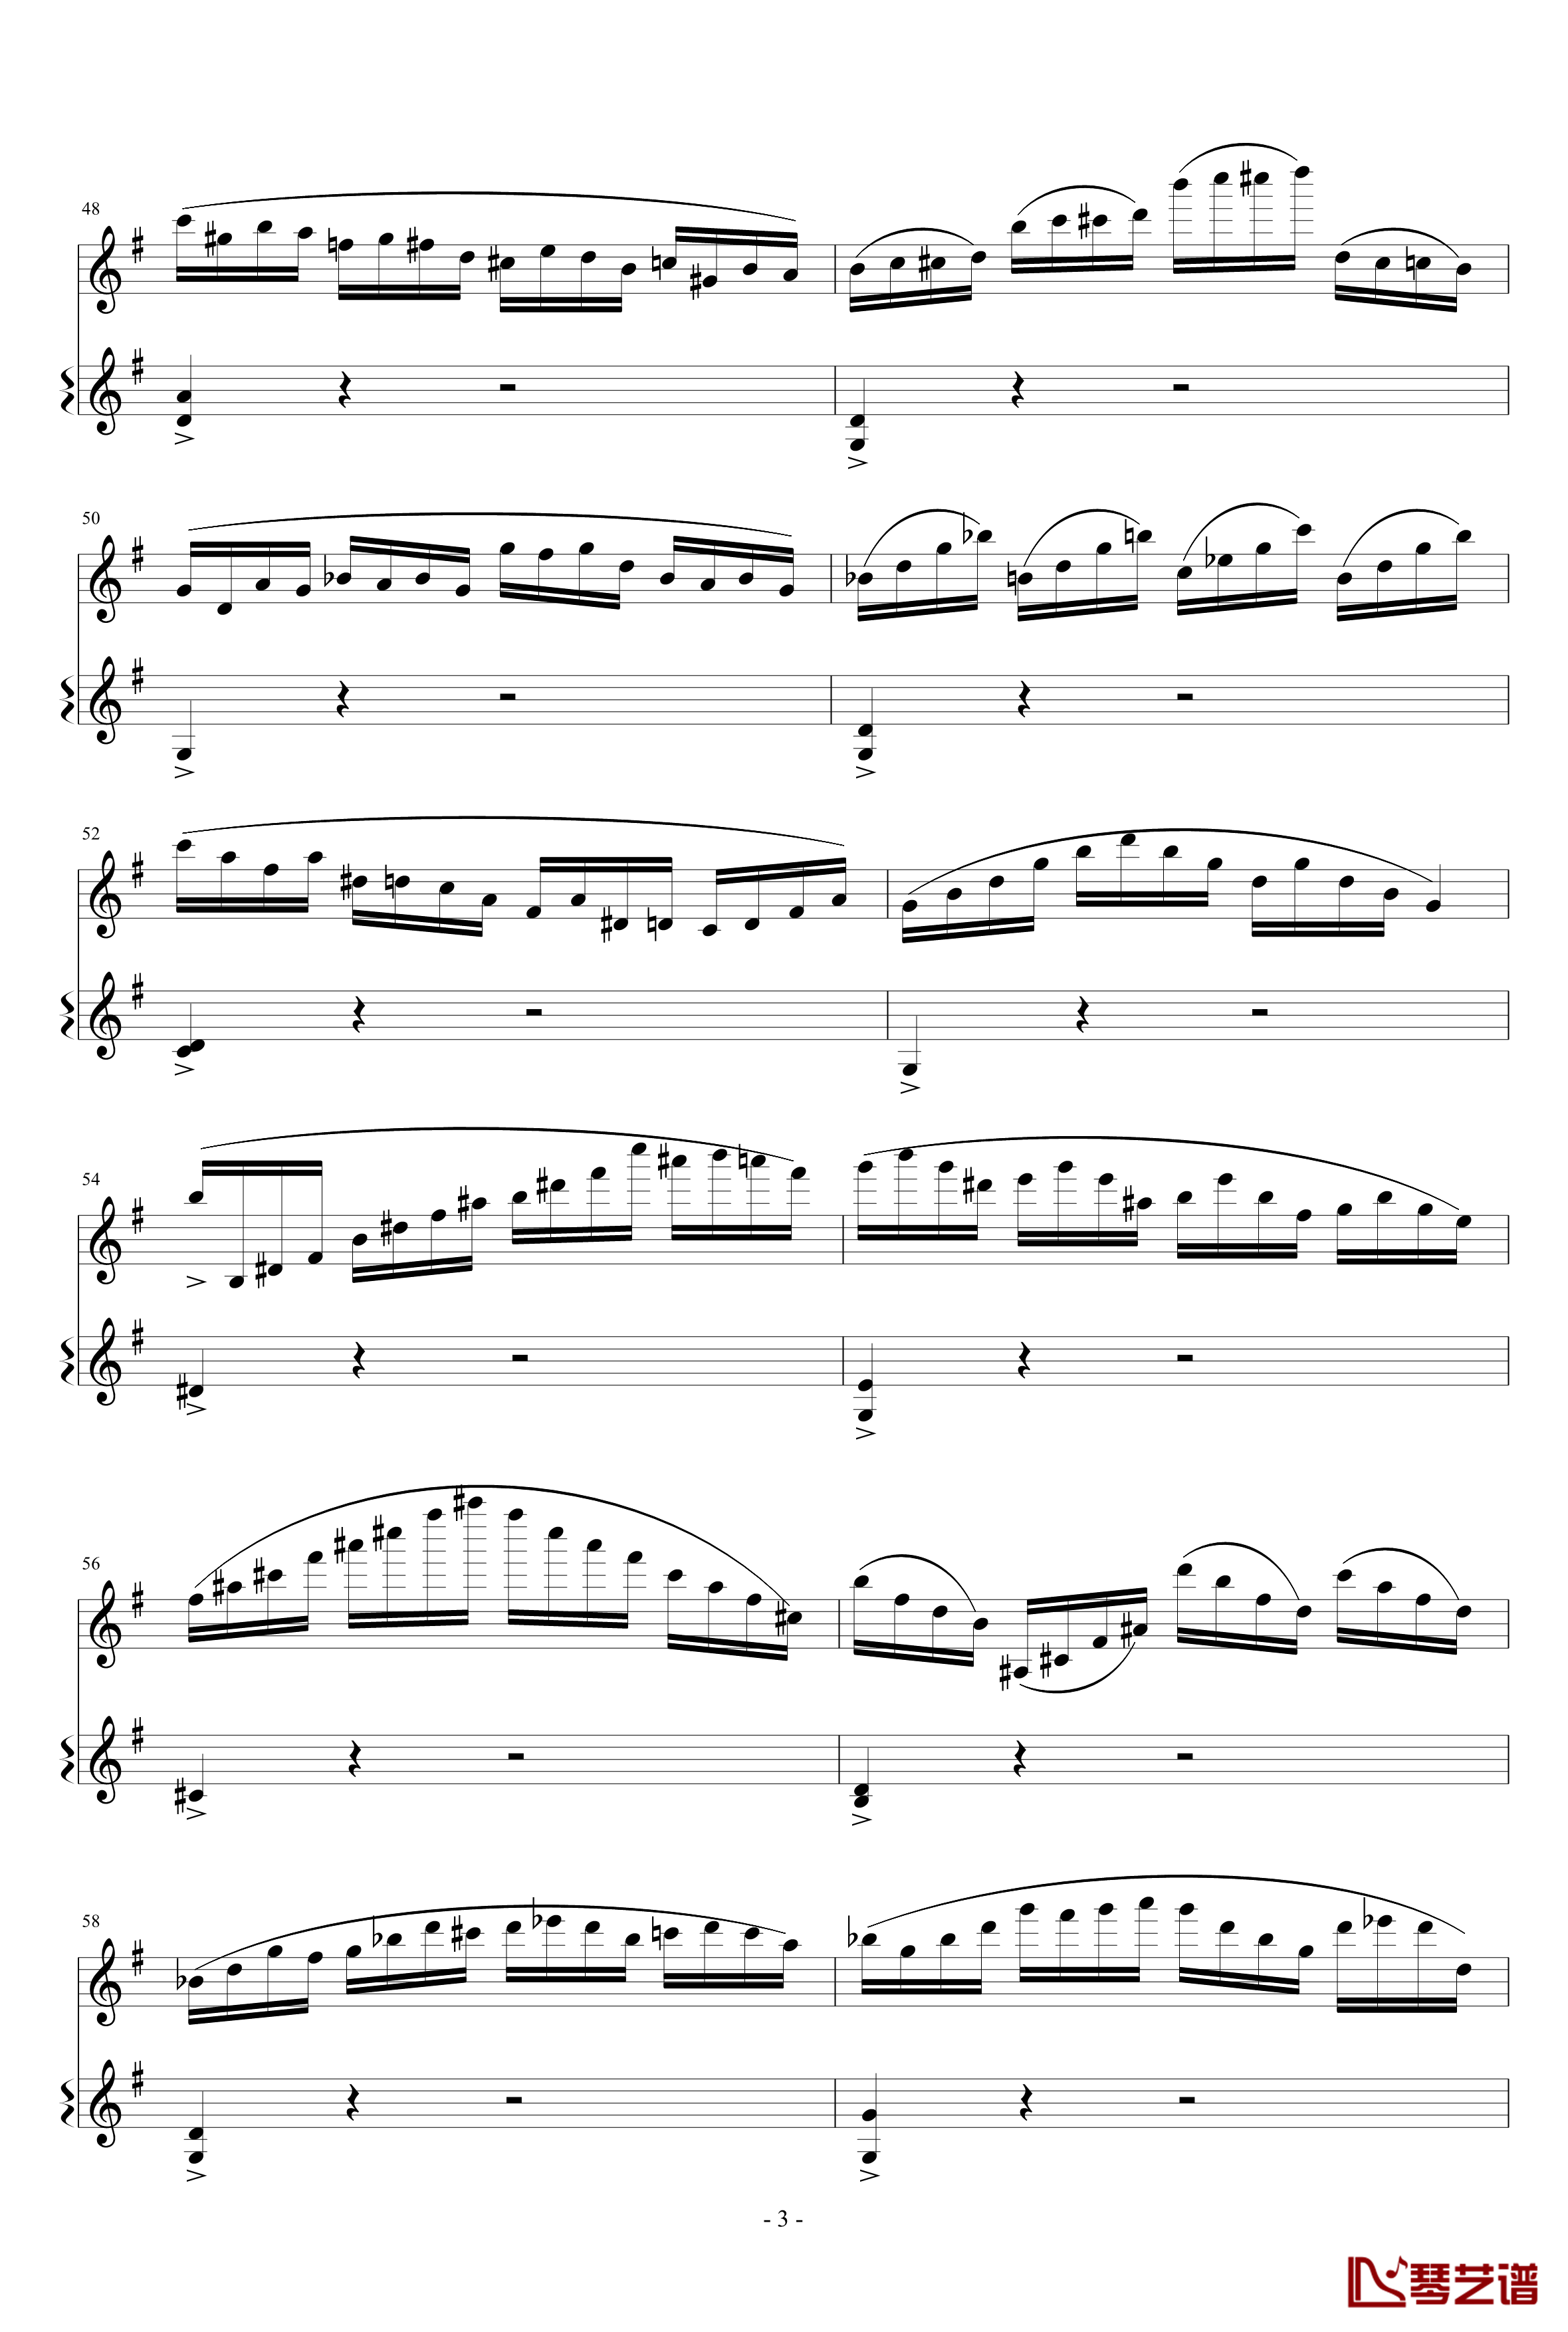 意大利国歌变奏曲钢琴谱-只修改了一个音-DXF3